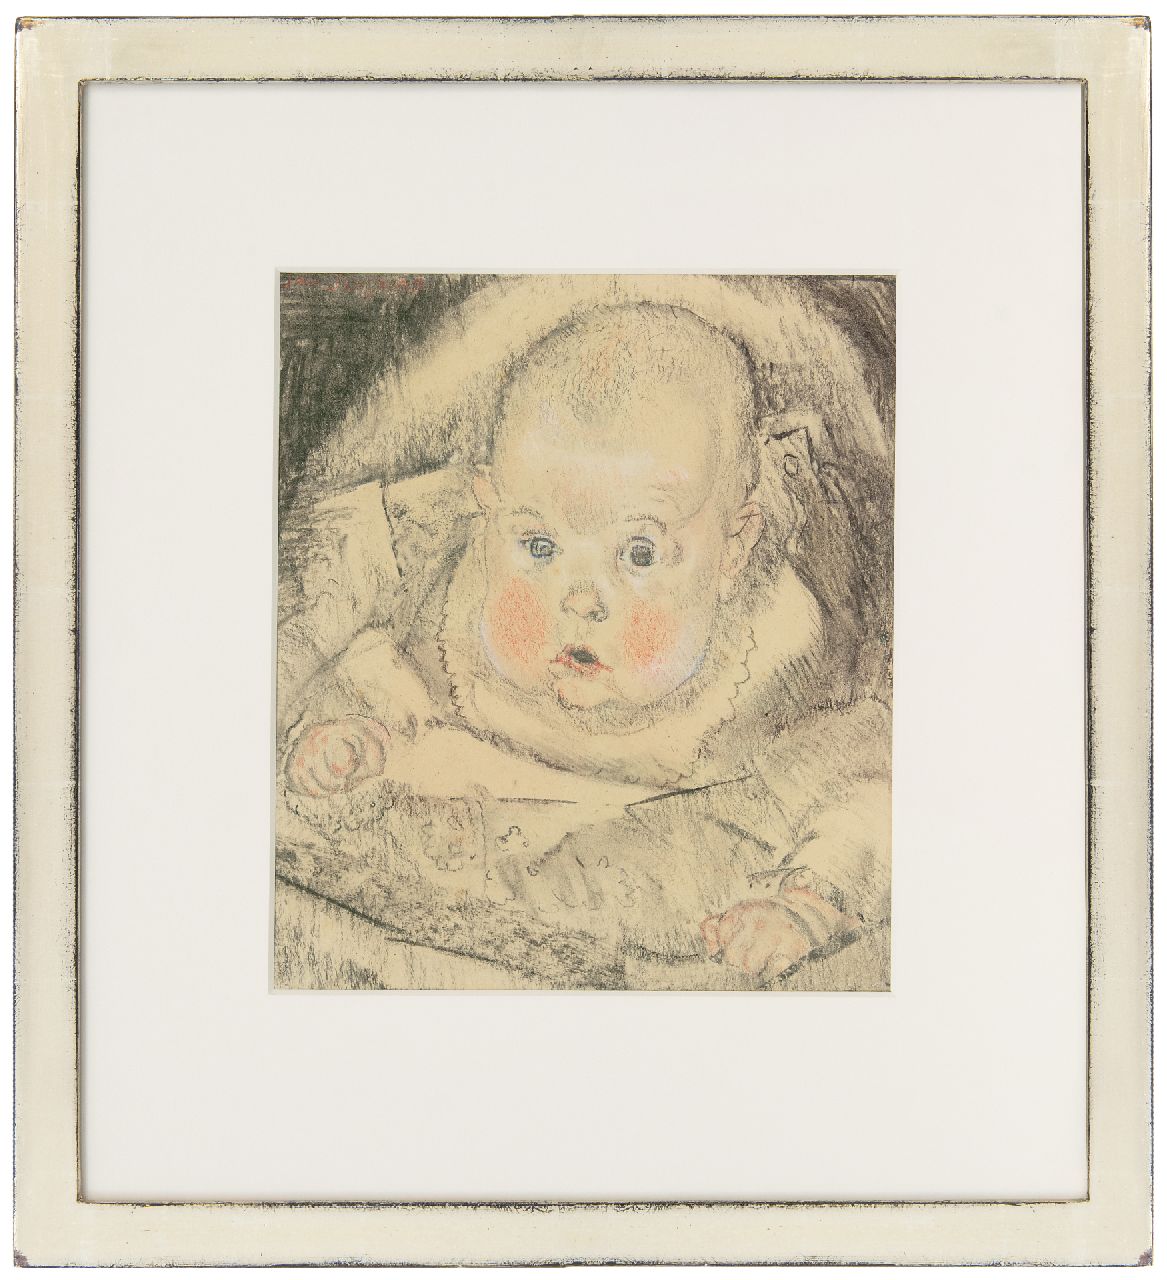 Sluijters J.C.B.  | Johannes Carolus Bernardus 'Jan' Sluijters | Aquarellen en tekeningen te koop aangeboden | Baby in wieg, houtskool en krijt op papier 29,0 x 25,3 cm, gesigneerd linksboven